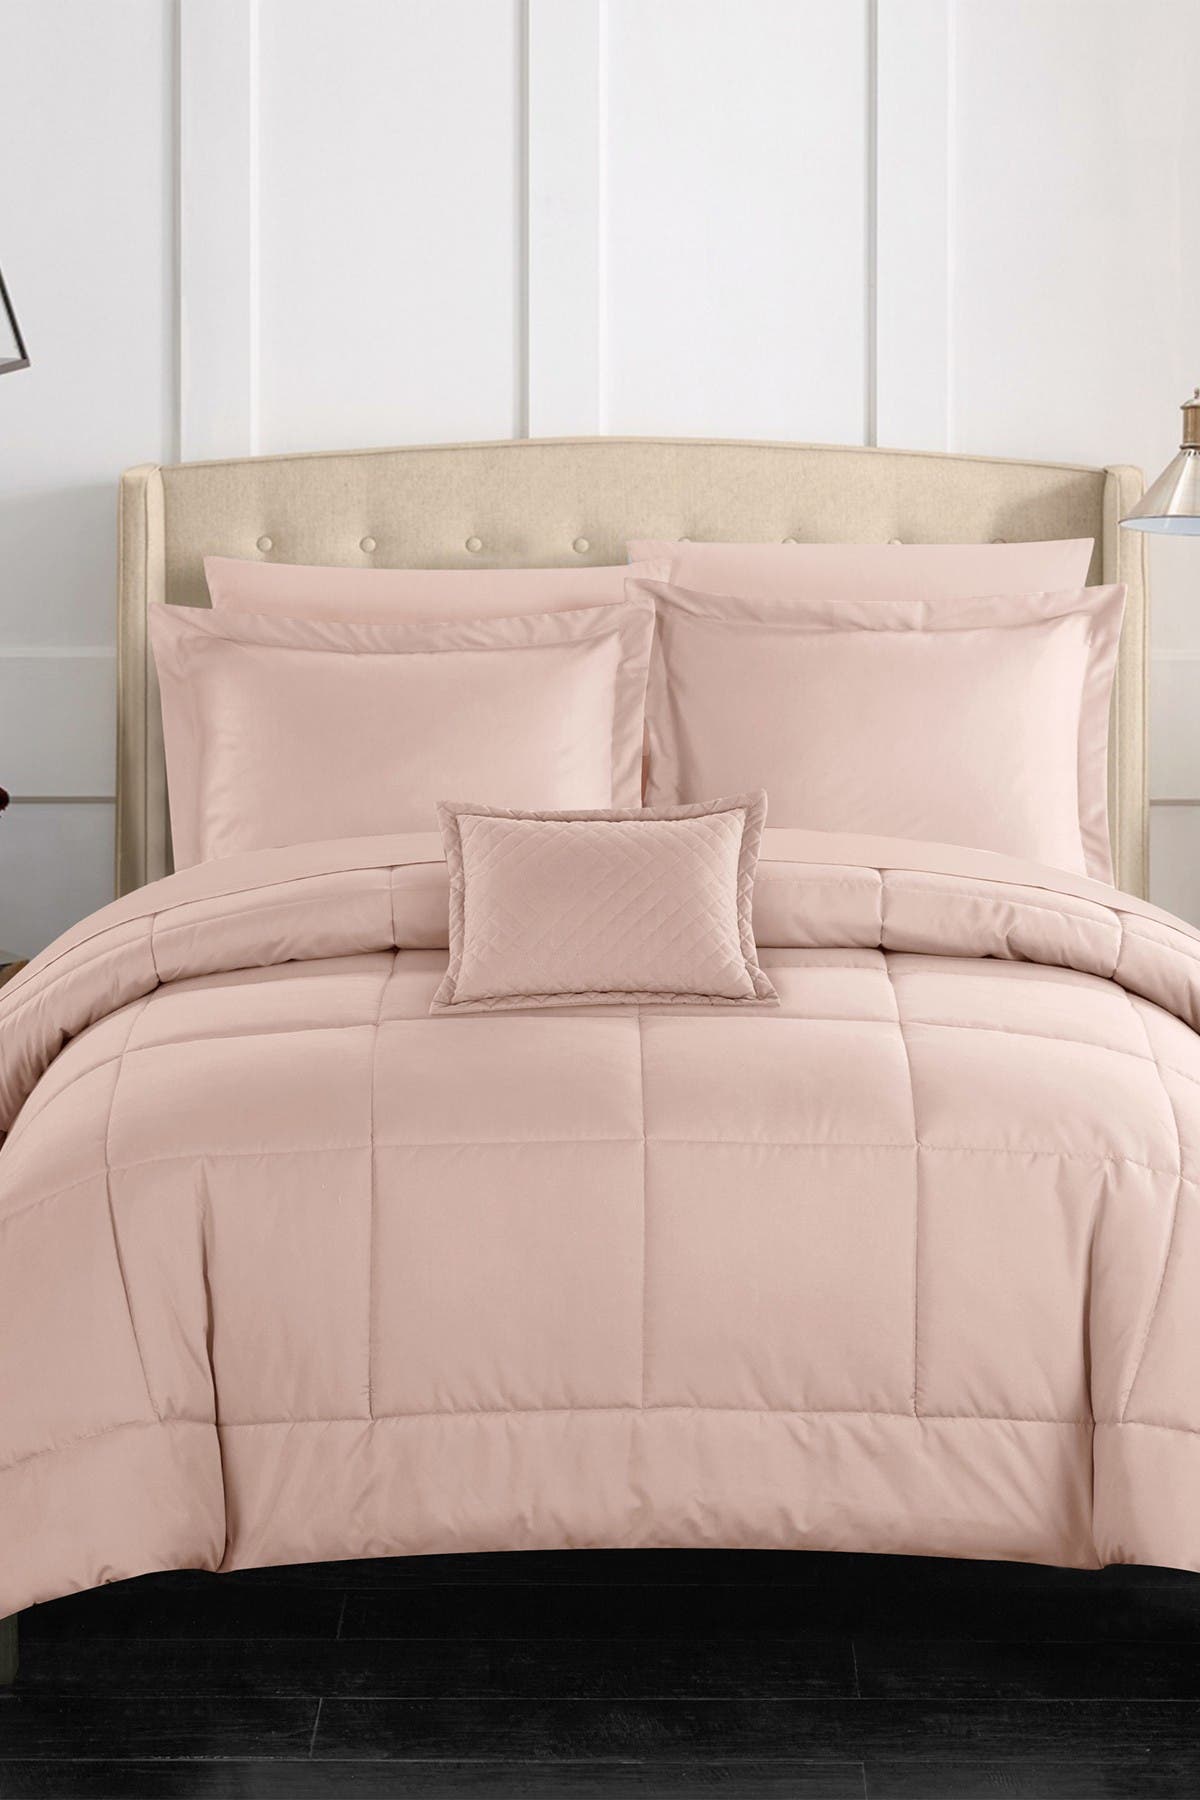 Joshuah Сшитая Однотонная Дизайнерская Кровать в Сумке Комплект Одеяла Queen - Коралловый CHIC